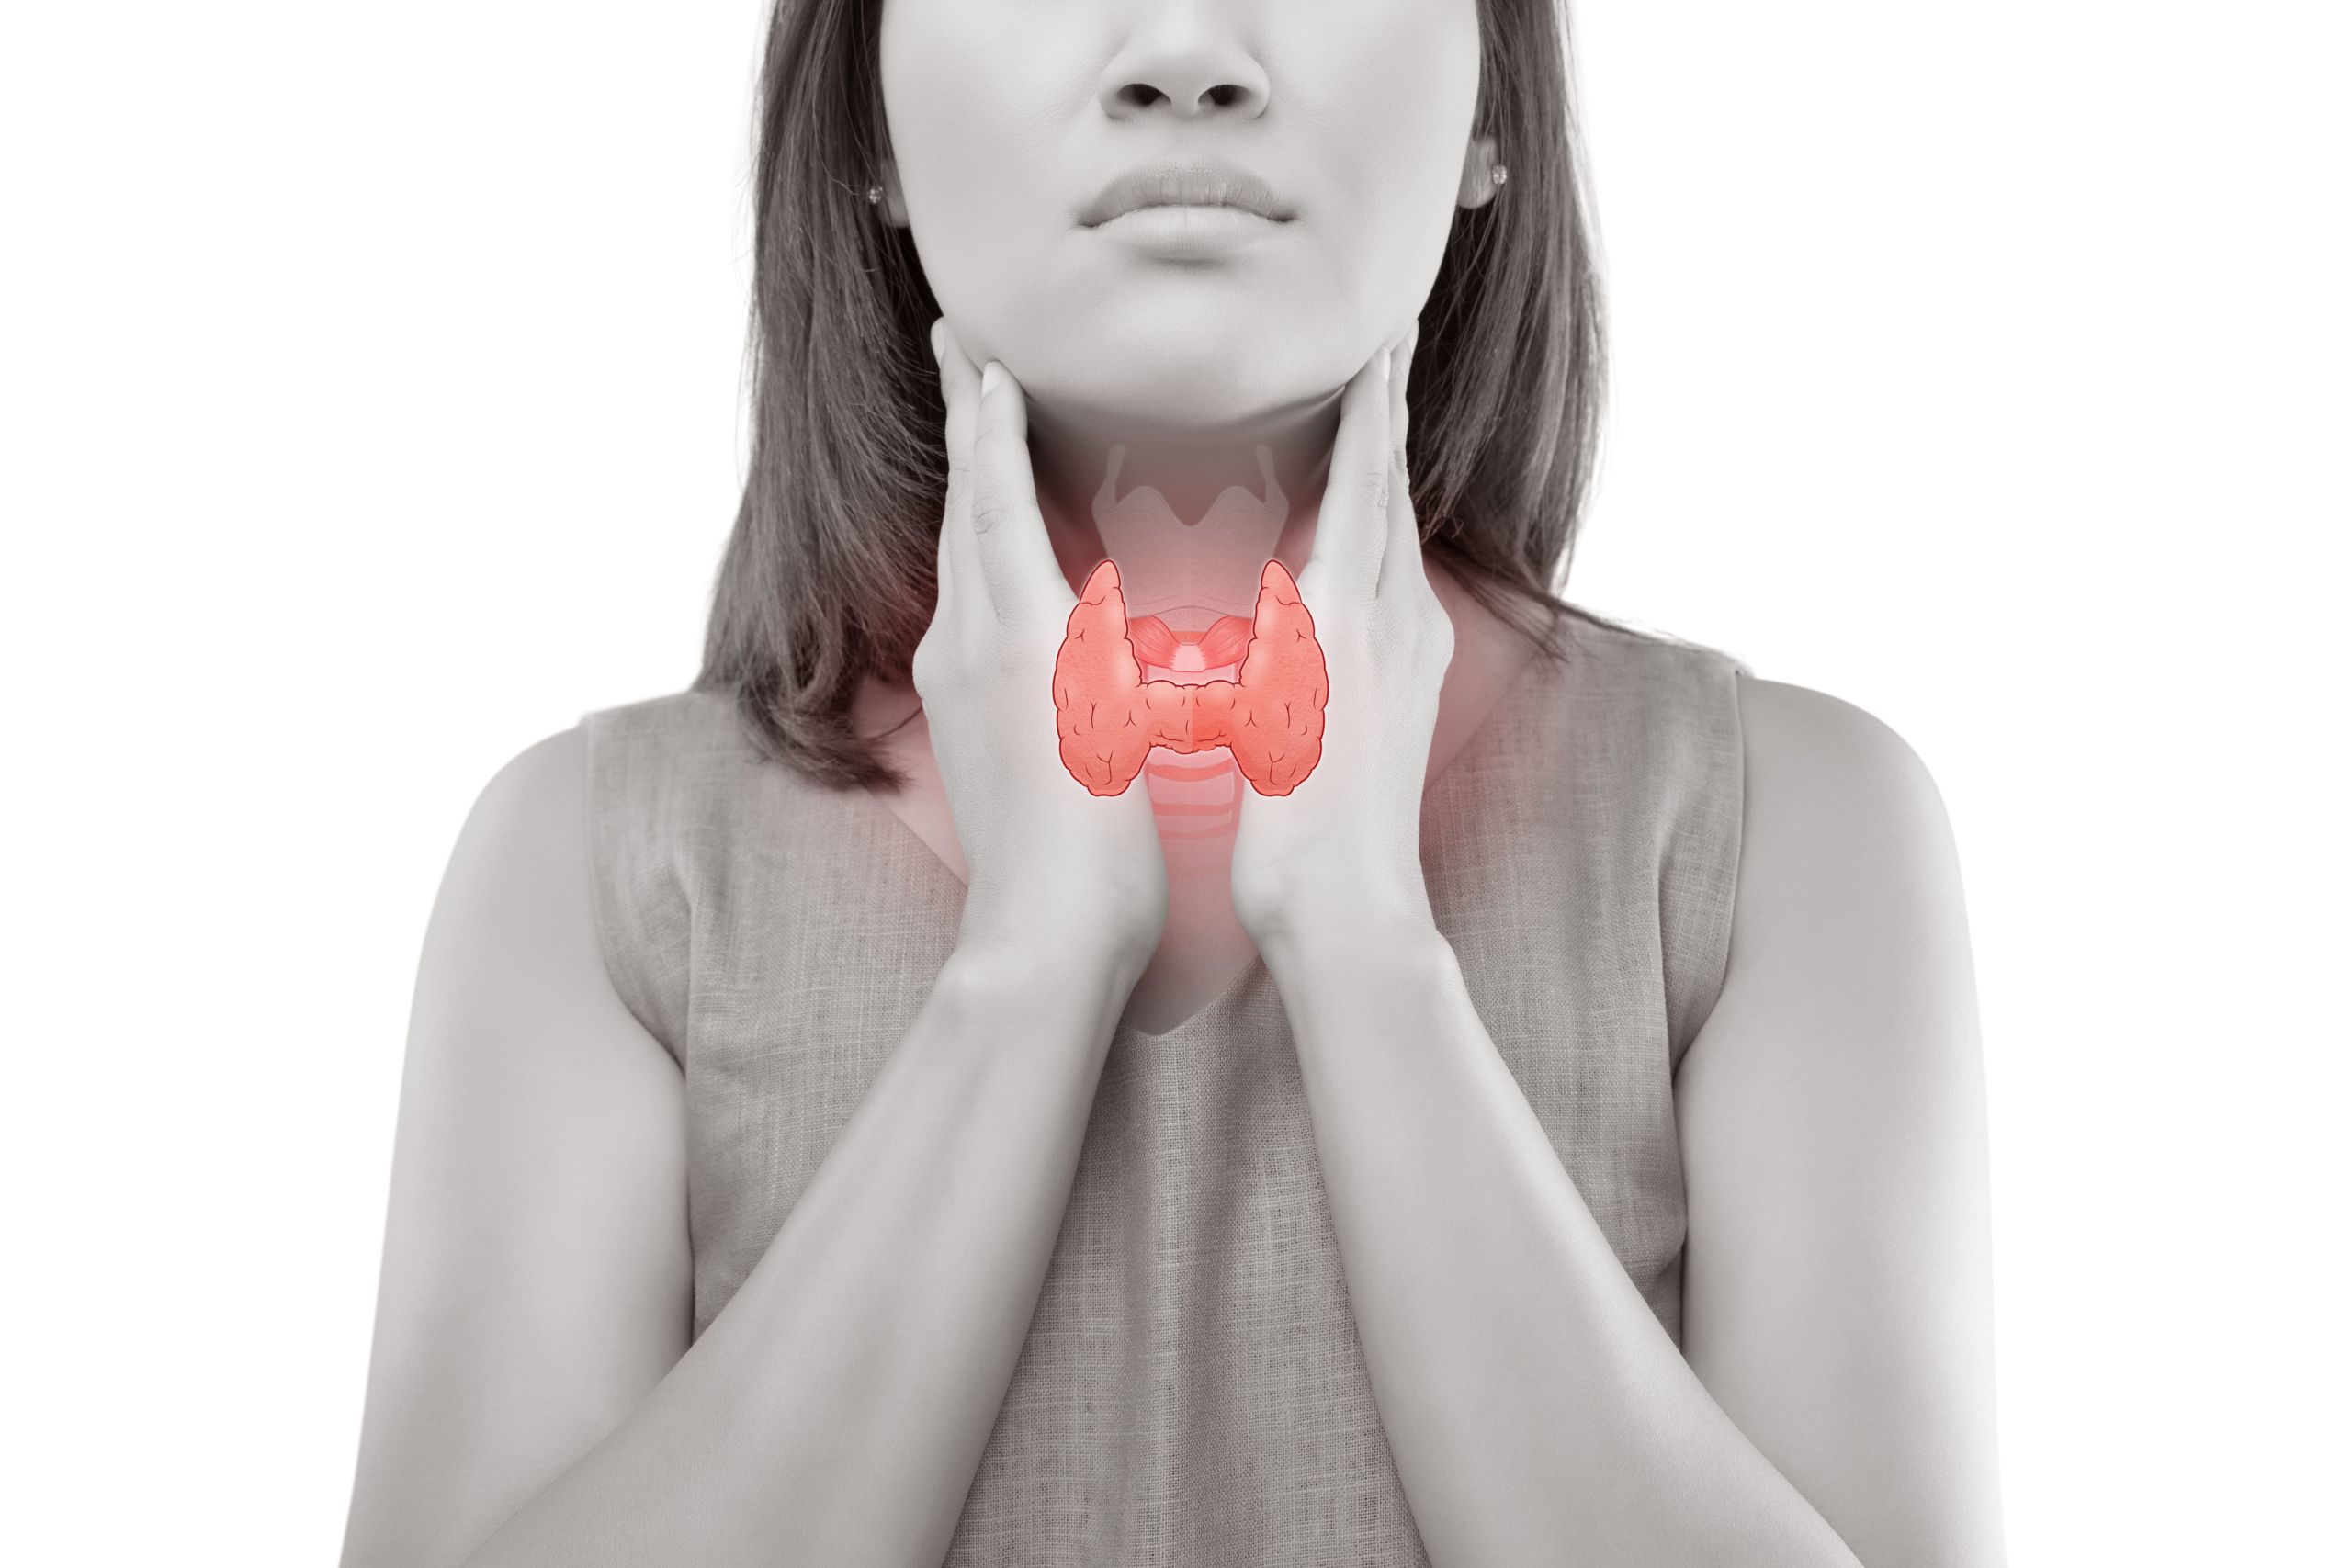 weMED-Hypothyroidism-thyroid, Treatment, Houston TX, Reversing